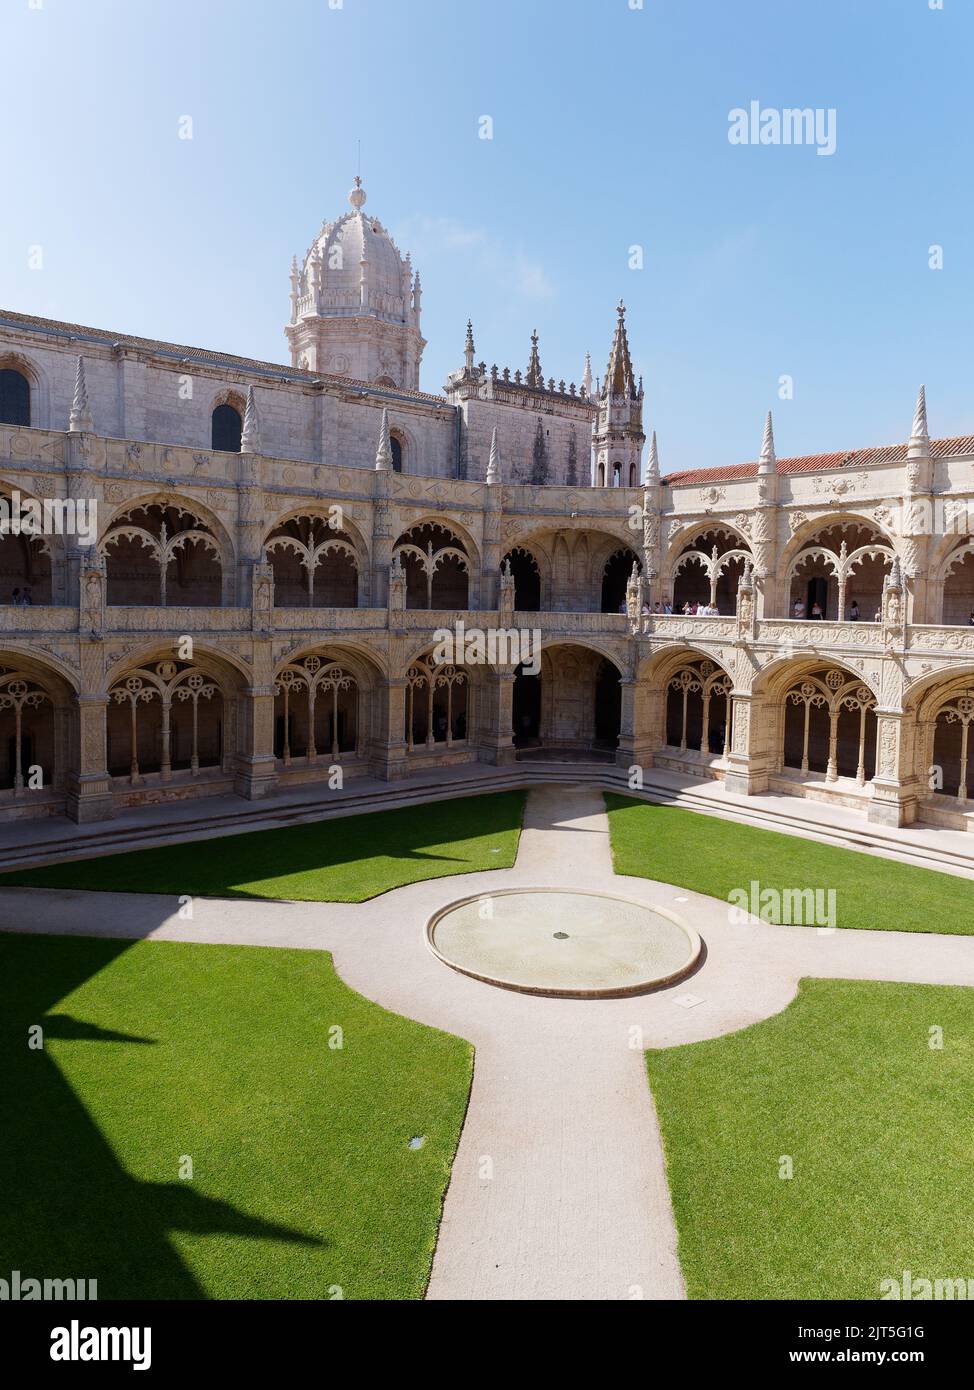 Im Inneren des Klosters Jerónimos, das zum UNESCO-Weltkulturerbe gehört, im Stadtteil Belem von Lissabon, Portugal. Stockfoto